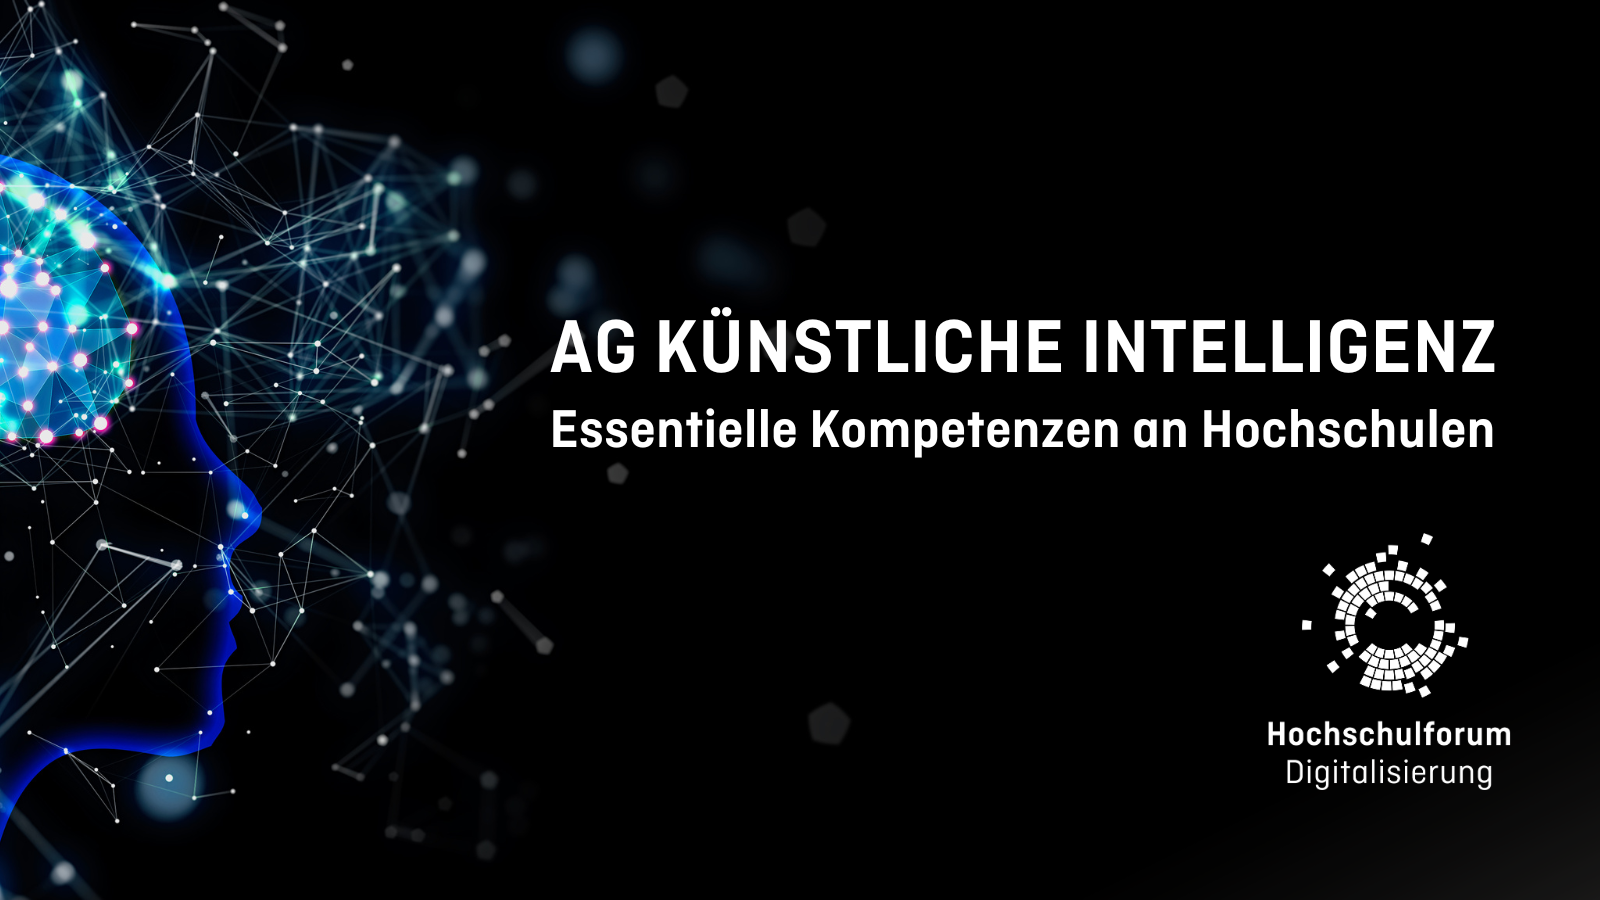 Links schemenhafter Kopf auf schwarzem Hintergrund. Titelbild der Seite "AG Künstliche Intelligenz: essentielle Kompetenzen an Hochschulen", Logo rechts unten: Hochschulforum Digitalisierung.